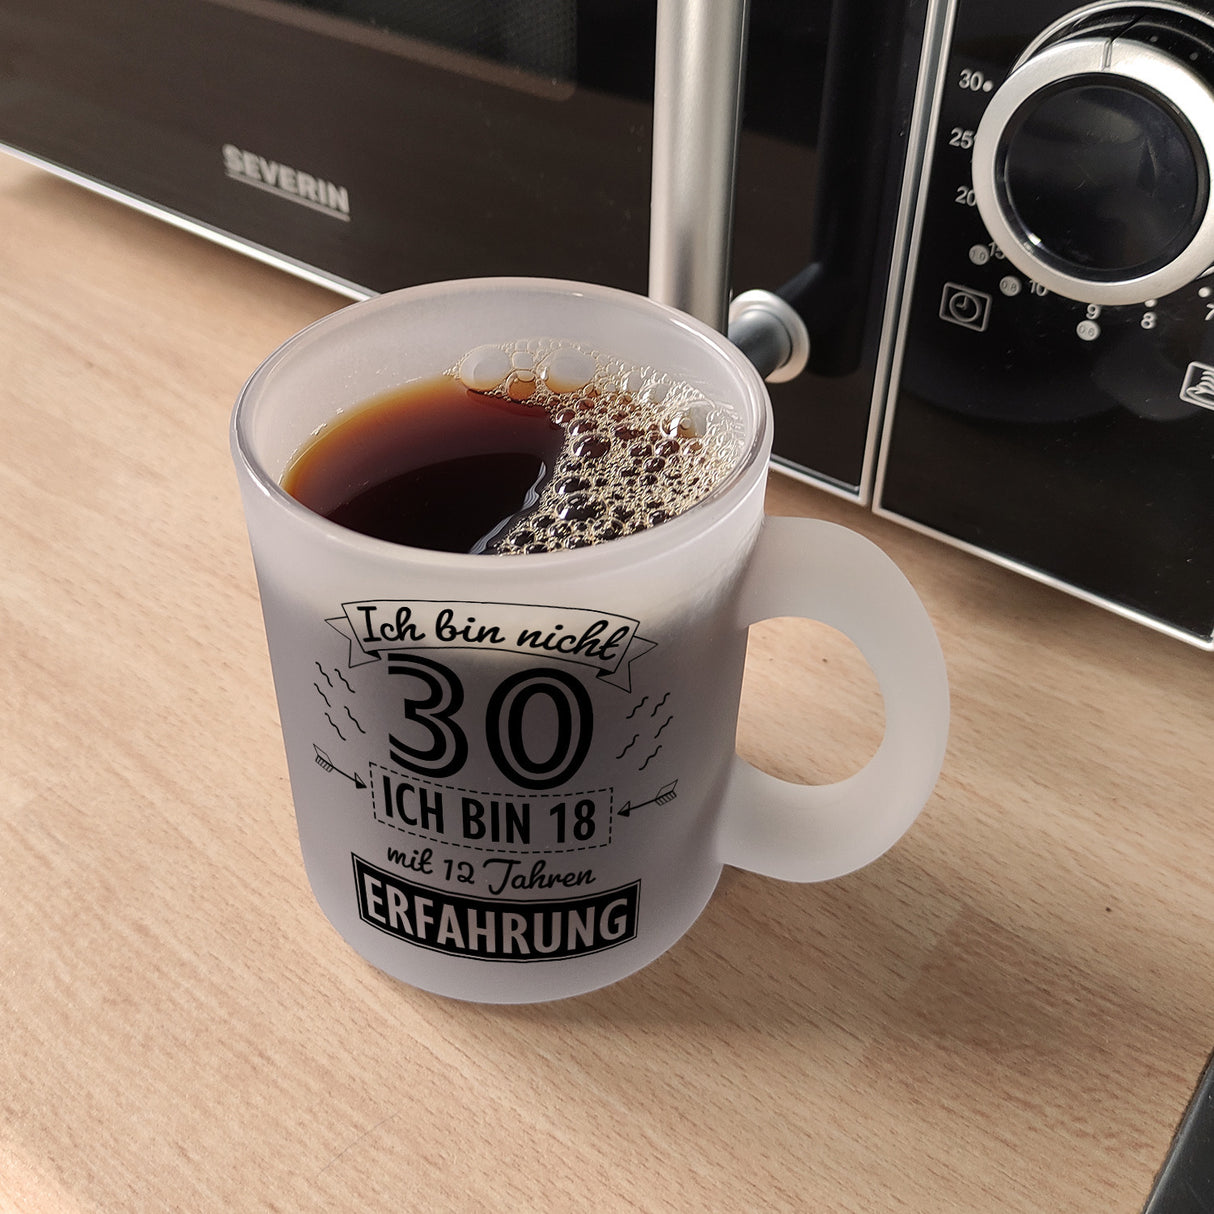 Kaffeebecher für den 30. Geburtstag mit Motiv: Erfahrung